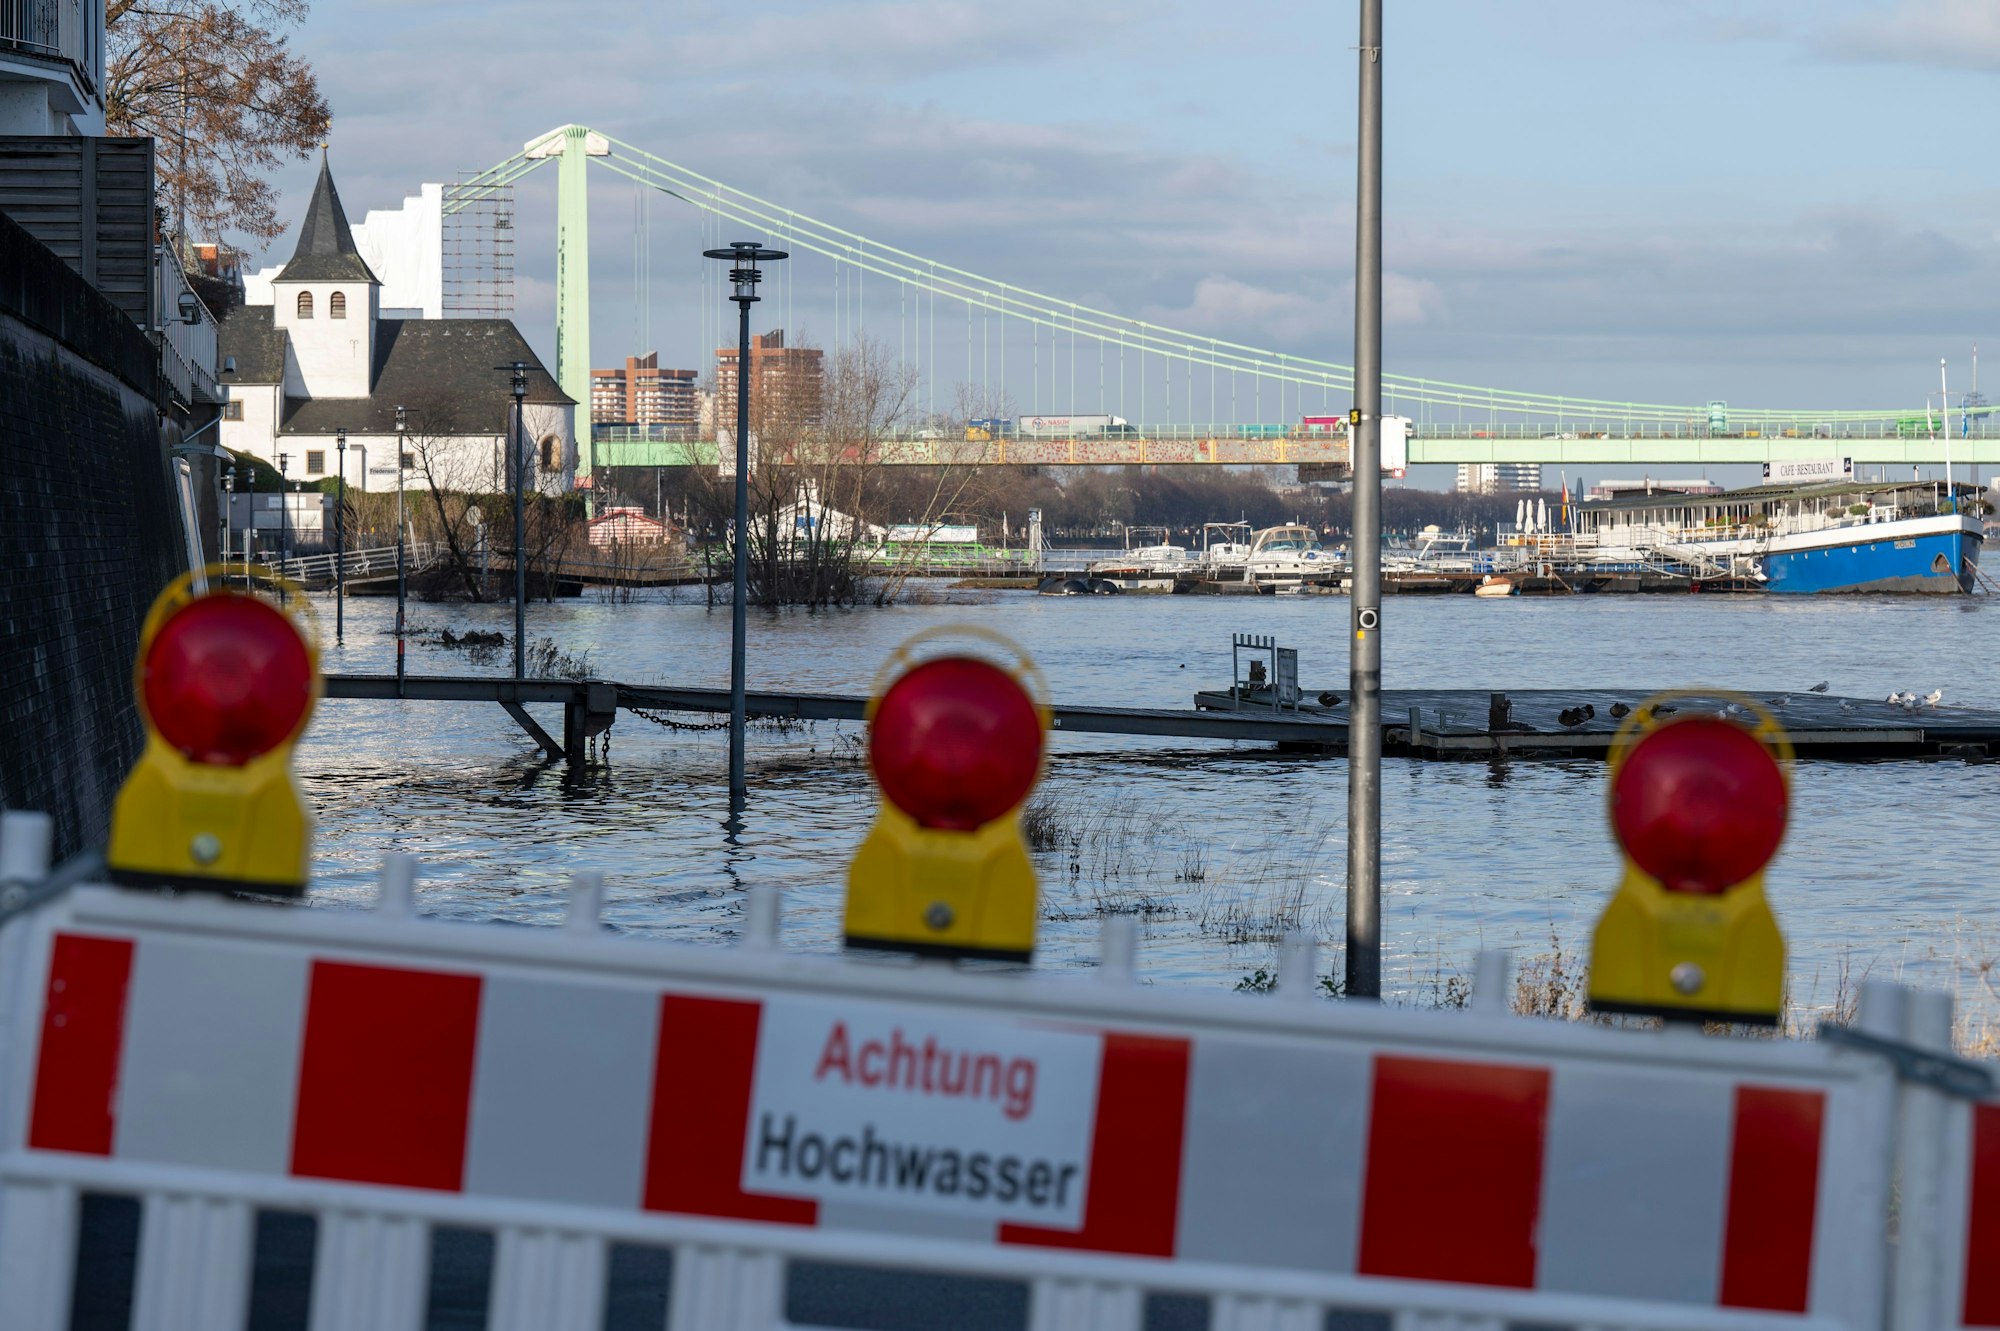 Rheinhochwasser in Rodenkirchen: Eine Absperrung steht am Ufer. Auf ihr steht "Achtung Hochwasser"